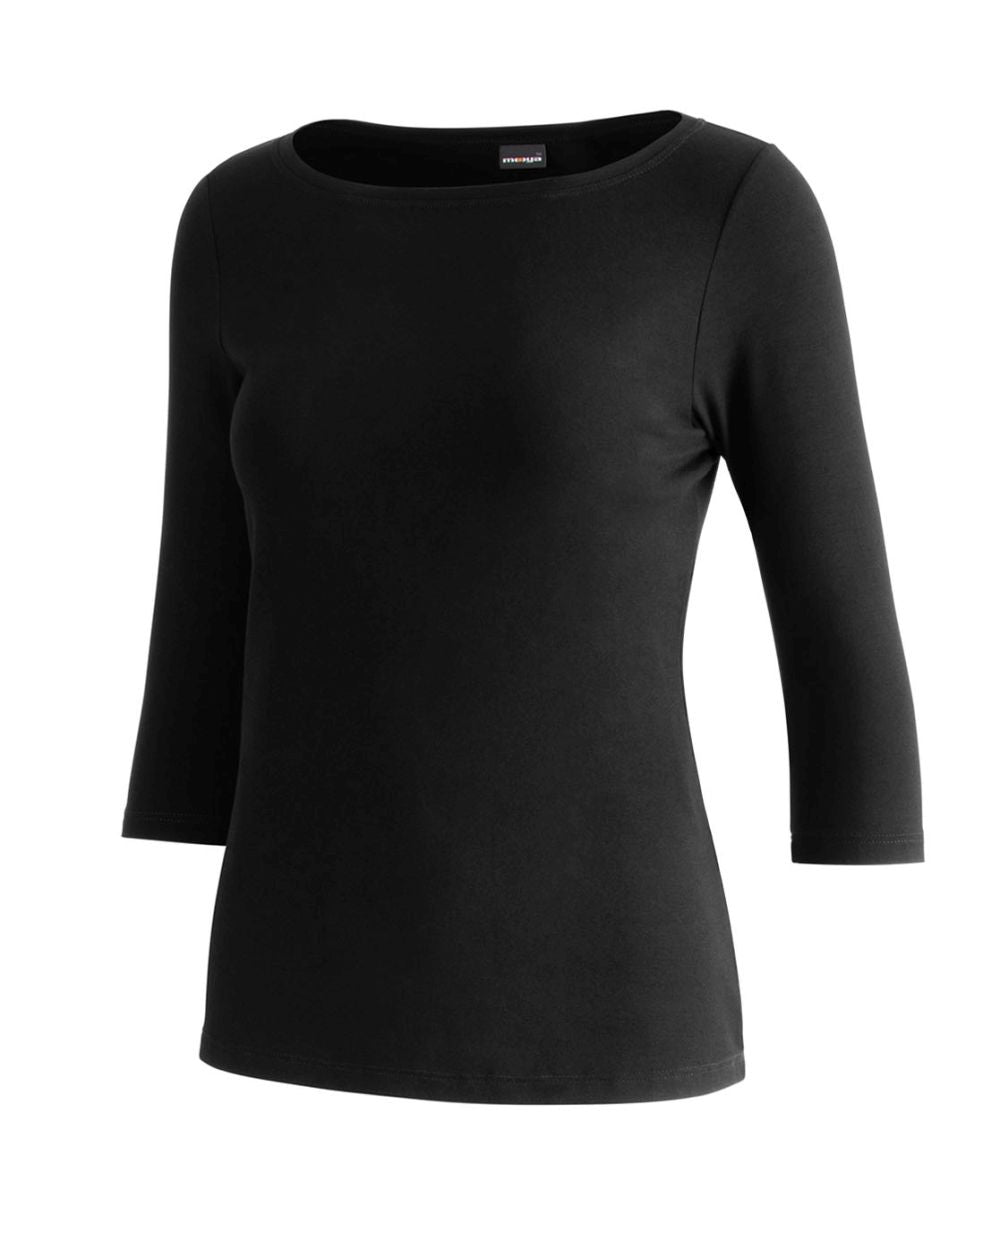 Damen-Shirt Valerie, Farbe black schwarz, Bootsausschnitt, 3/4-Arm